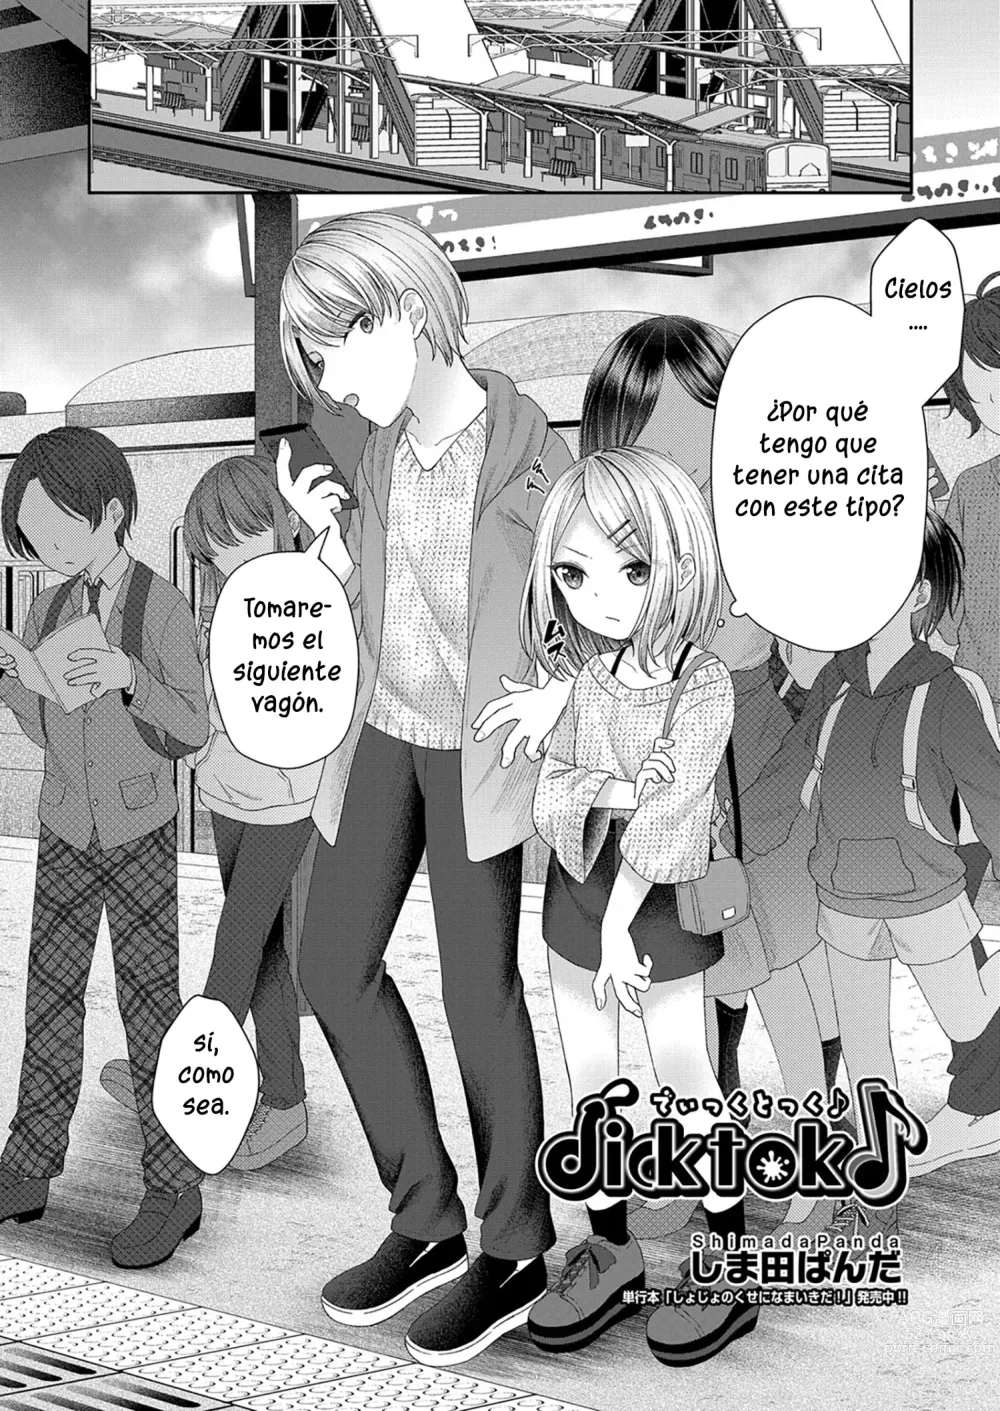 Page 2 of manga Dicktok